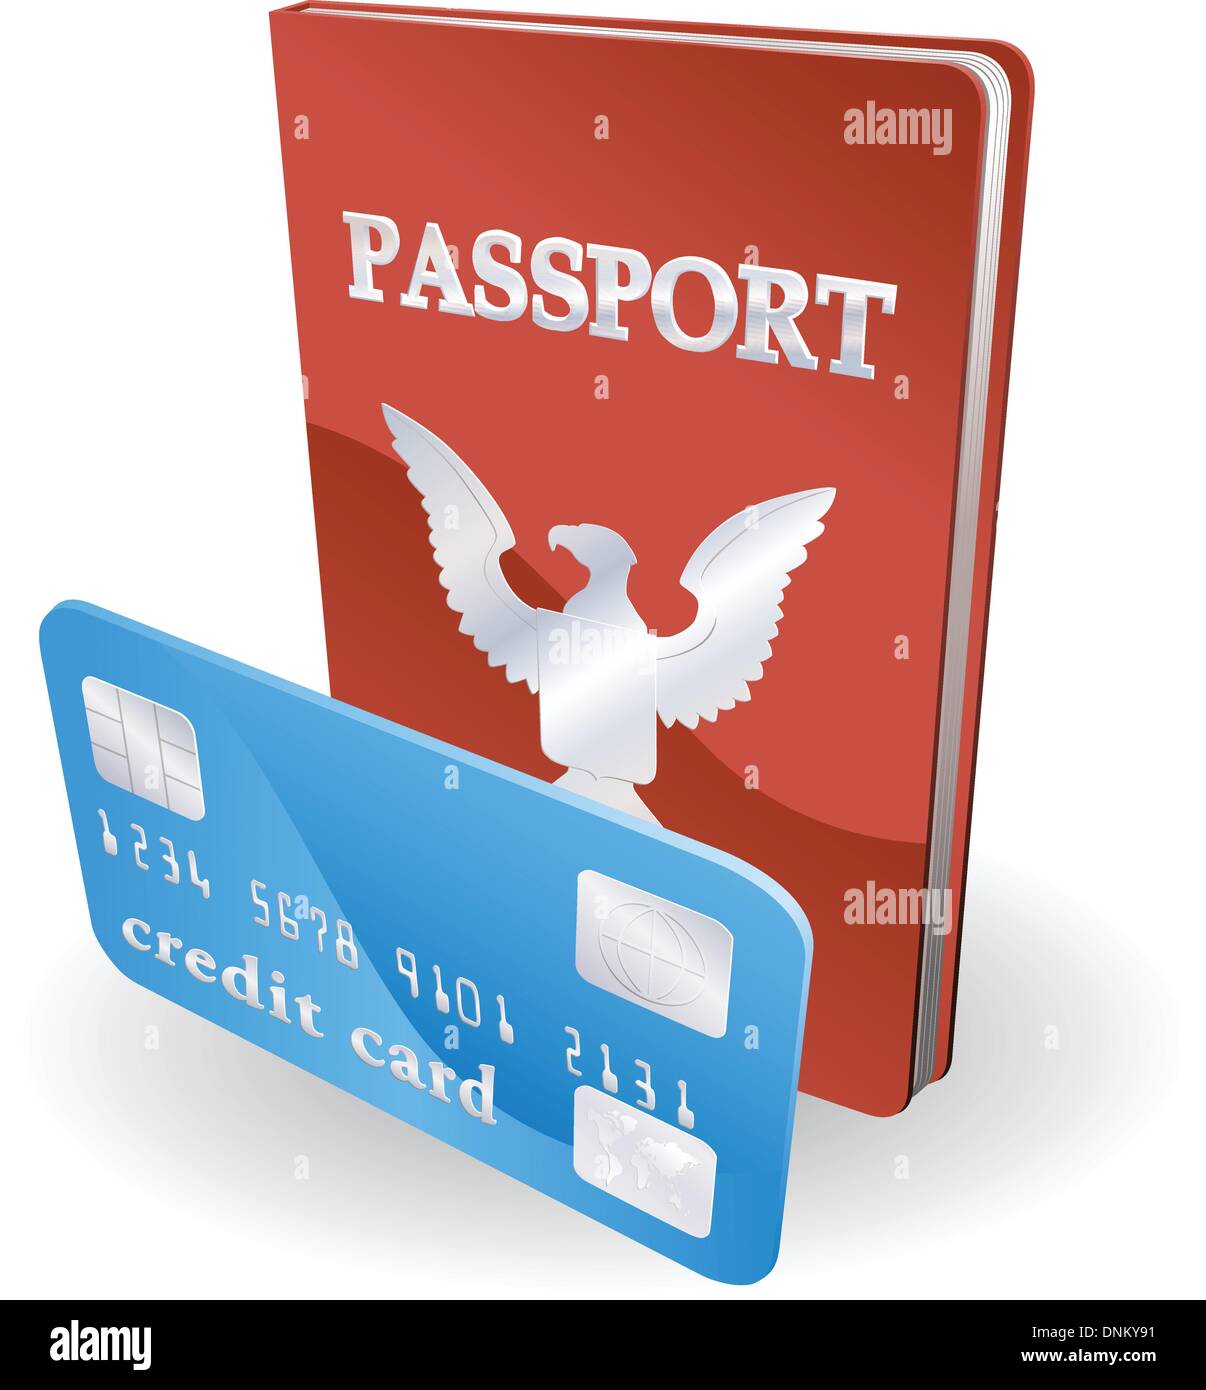 Reisepass und Kreditkarte Abbildung. Persönliche Identität Konzept. Stock Vektor